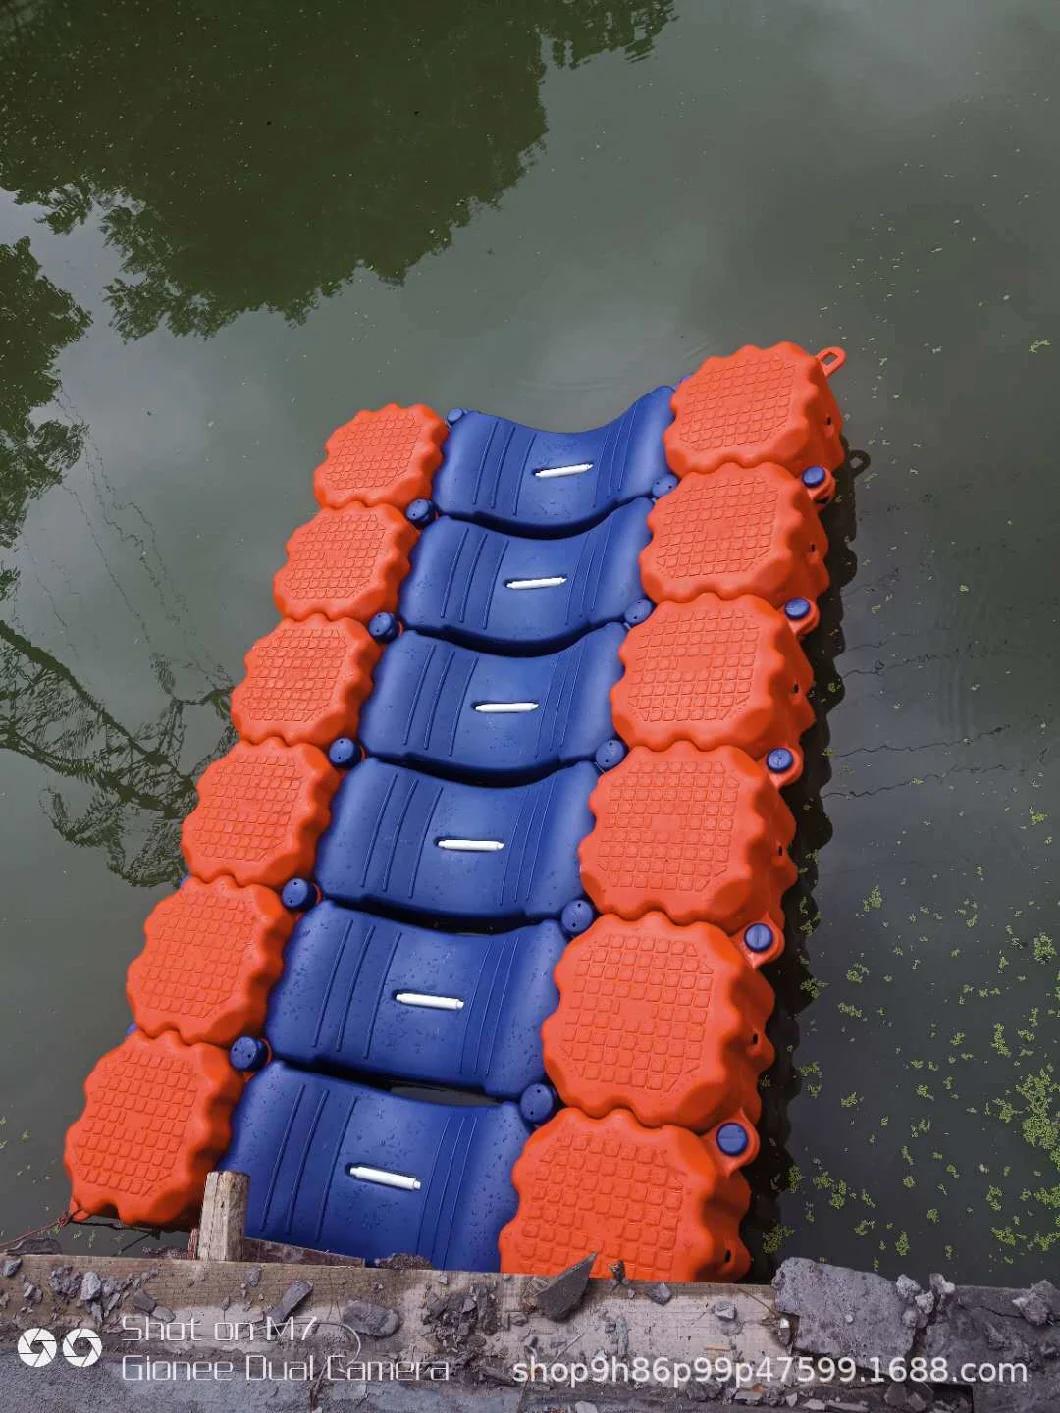 Colorful Designed Float Dock Plastic Pontoon Used Floating Platform